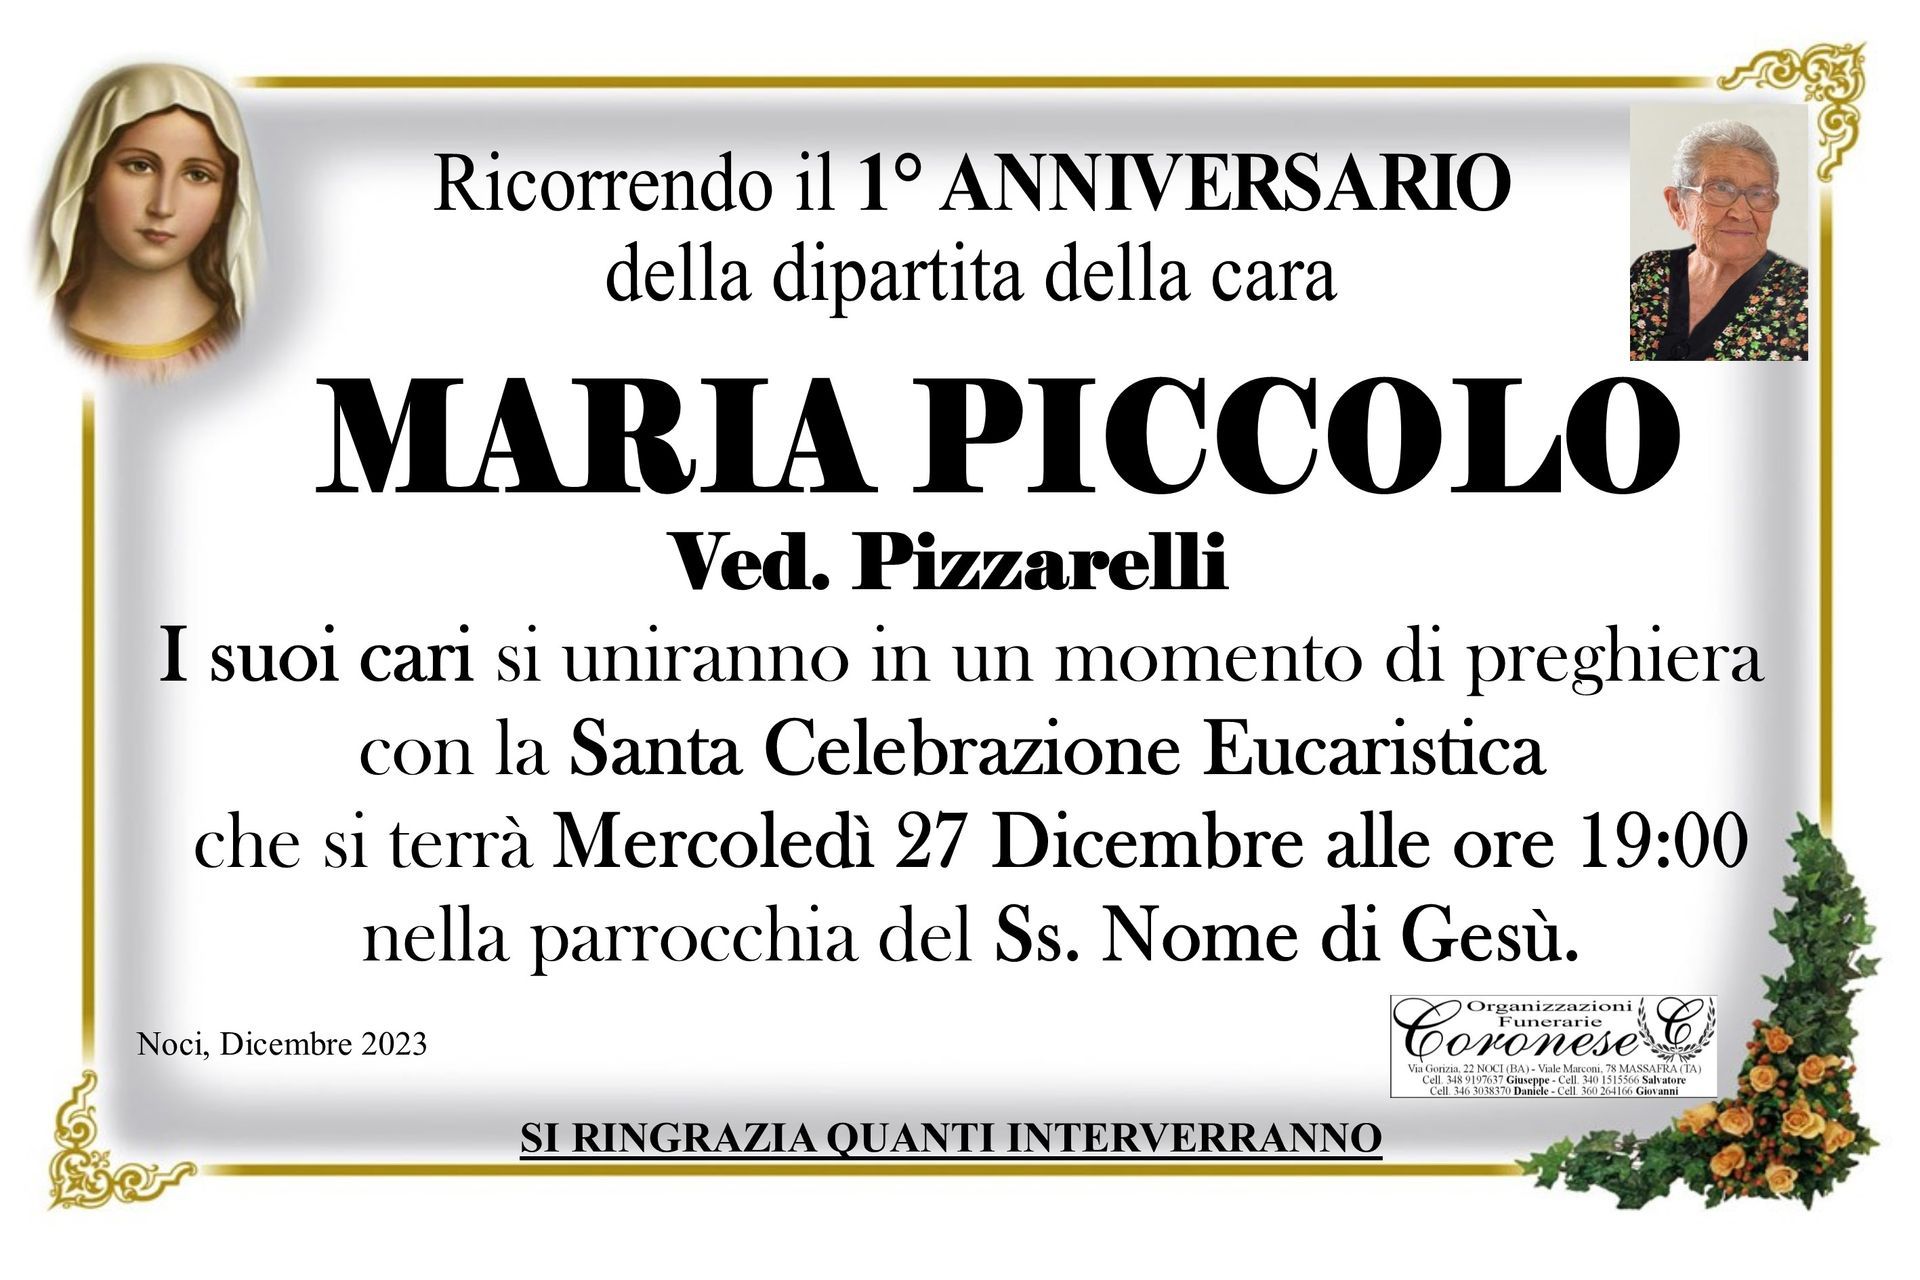 necrologio MARIA PICCOLO Ved. Pizzarelli